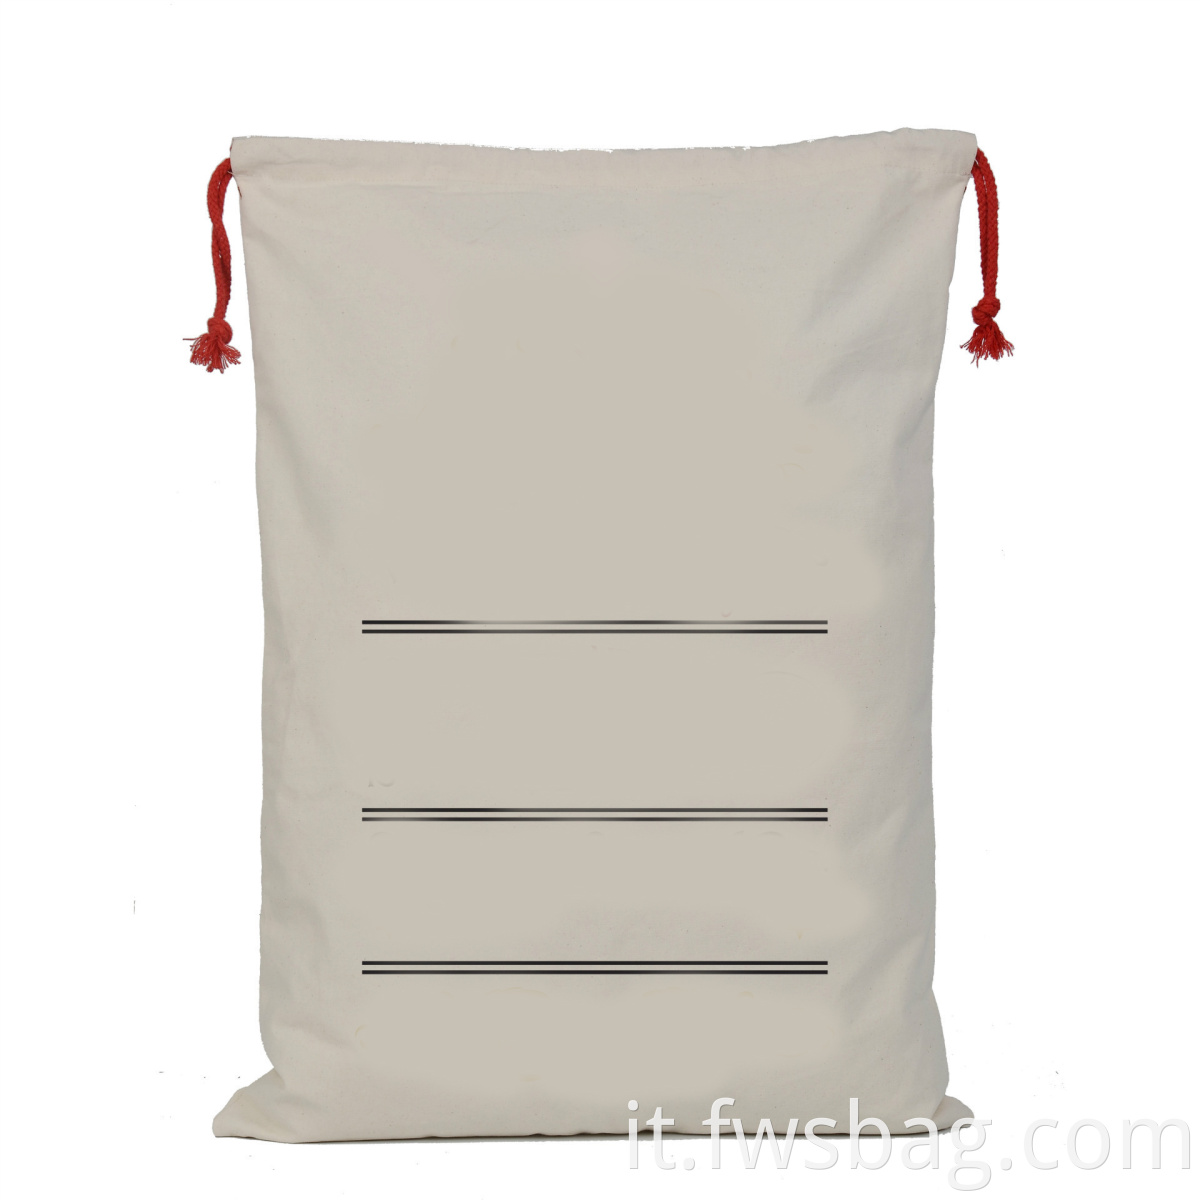 Sacche da regalo in cotone cotone natalizio tela promozionale in bianco santa sack